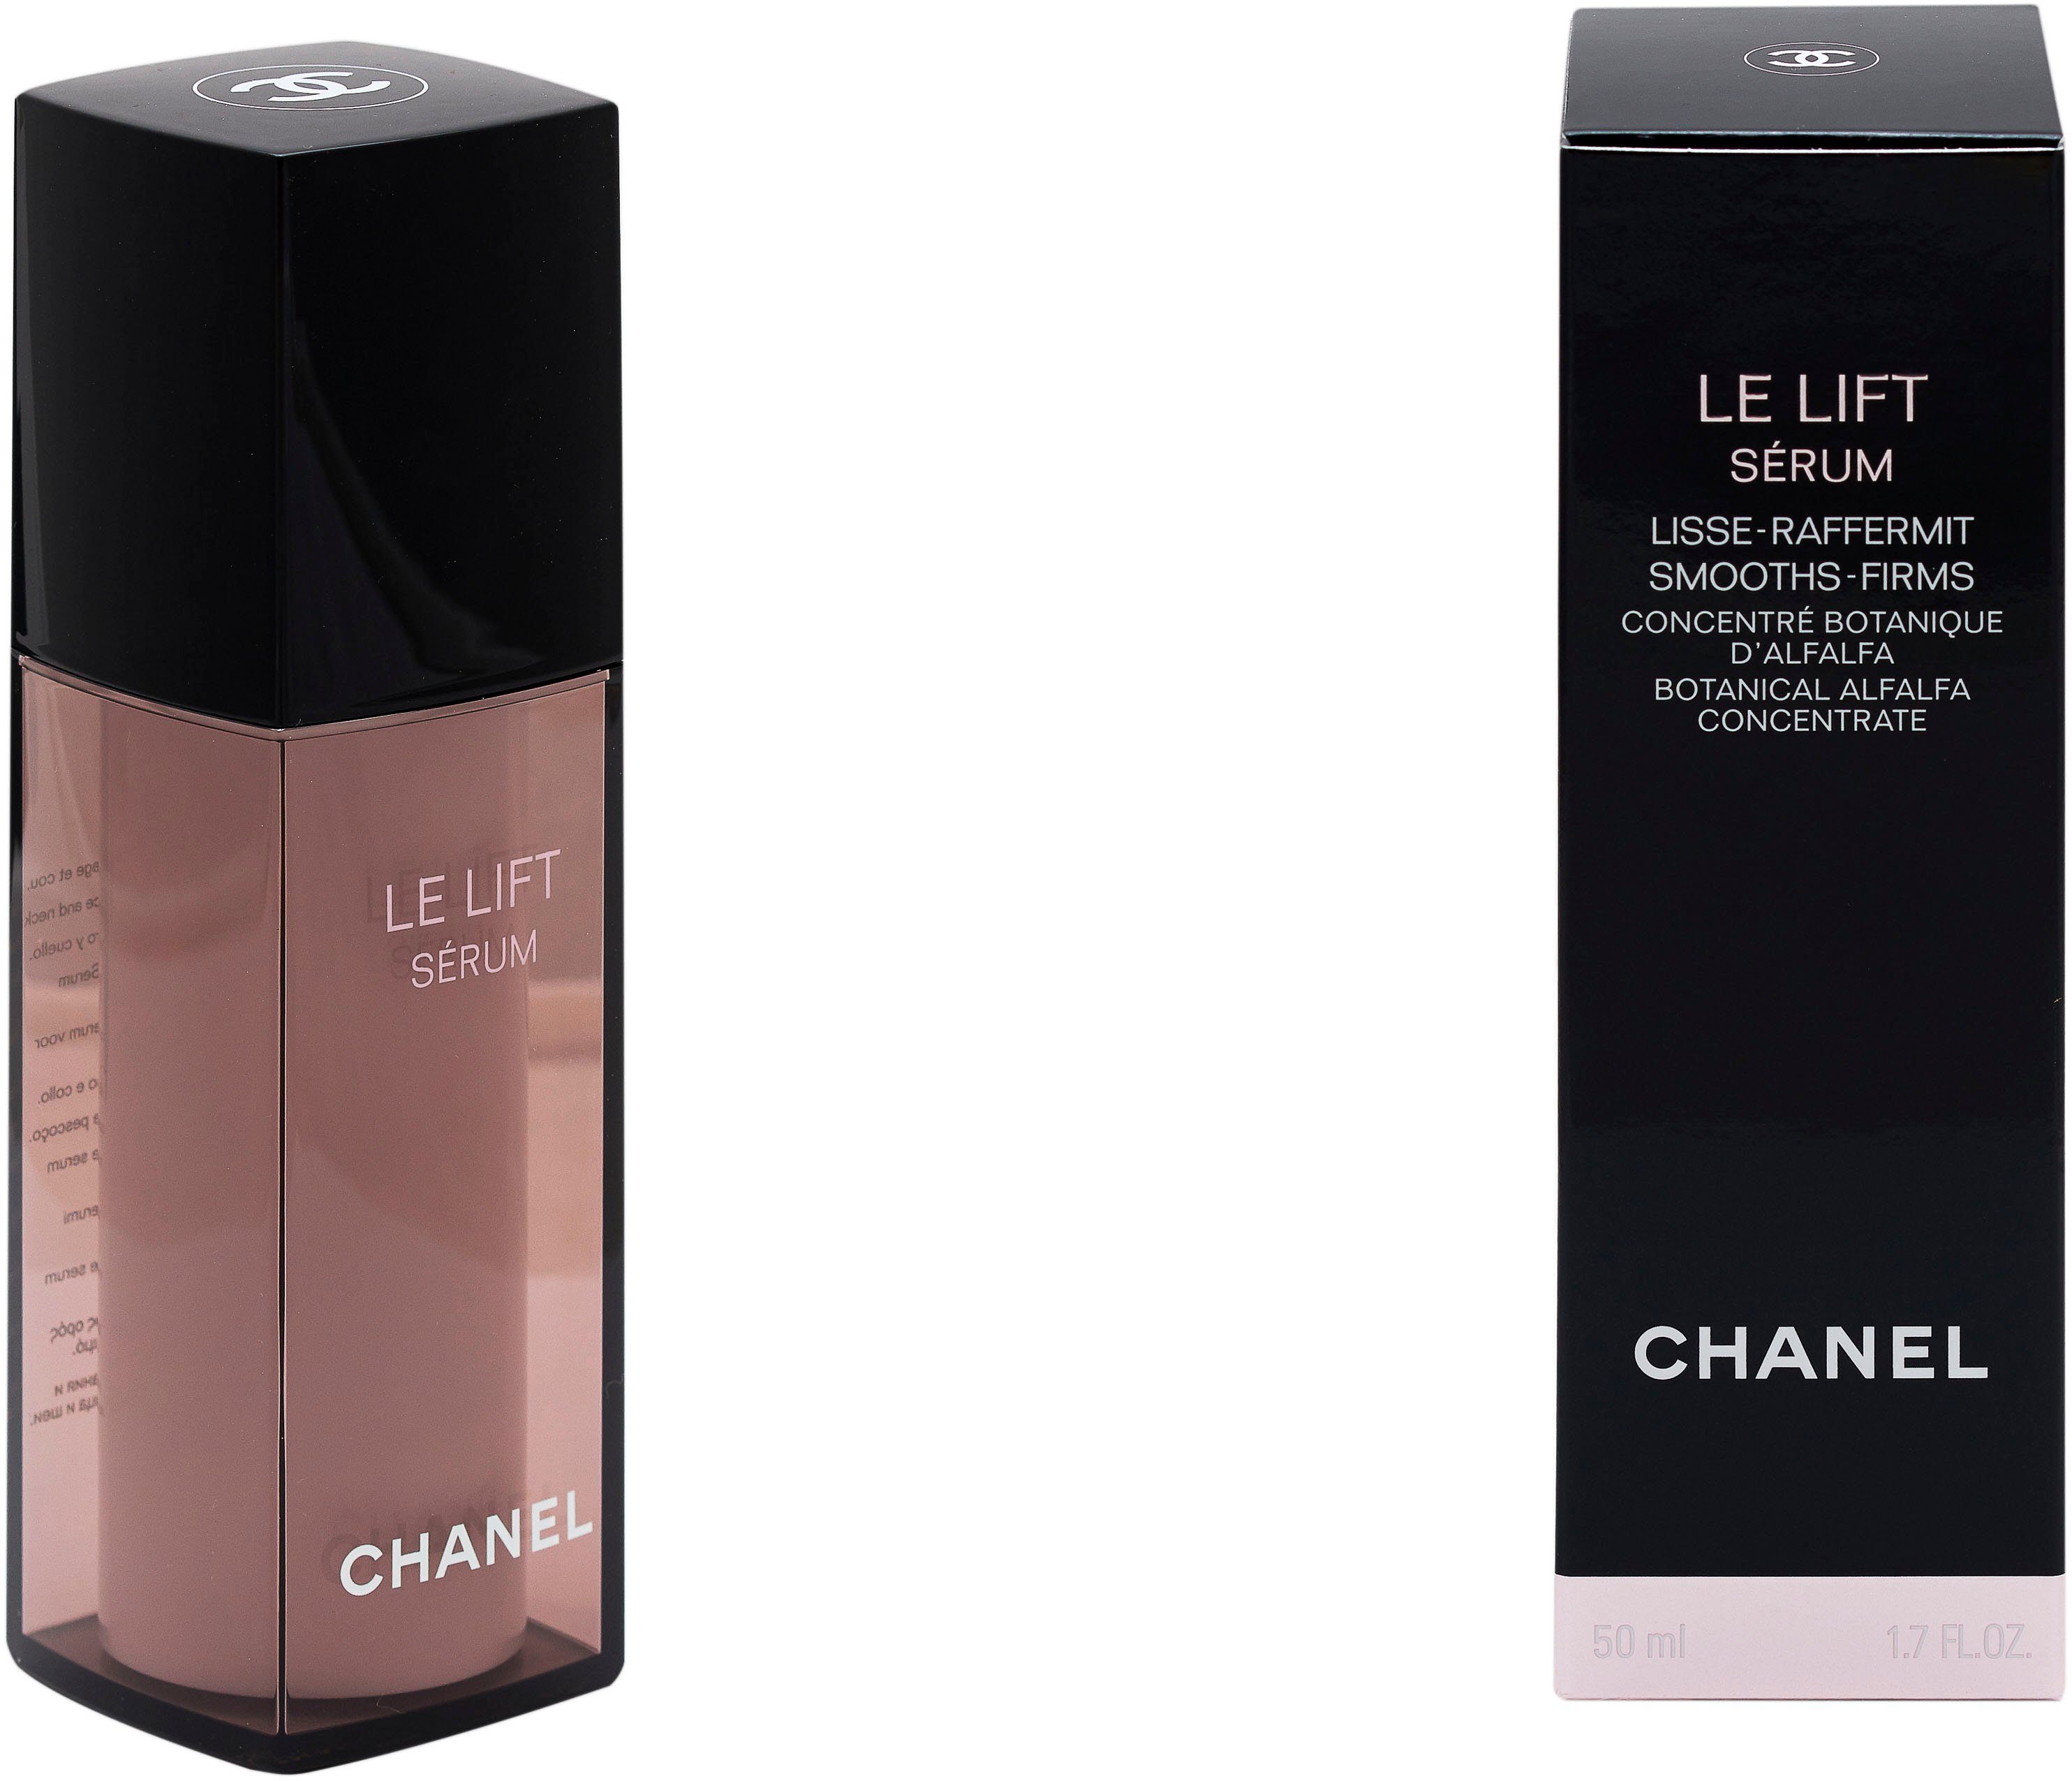 Le Gesichtsserum Lift Serum Chanel Lisse-Raffermint CHANEL